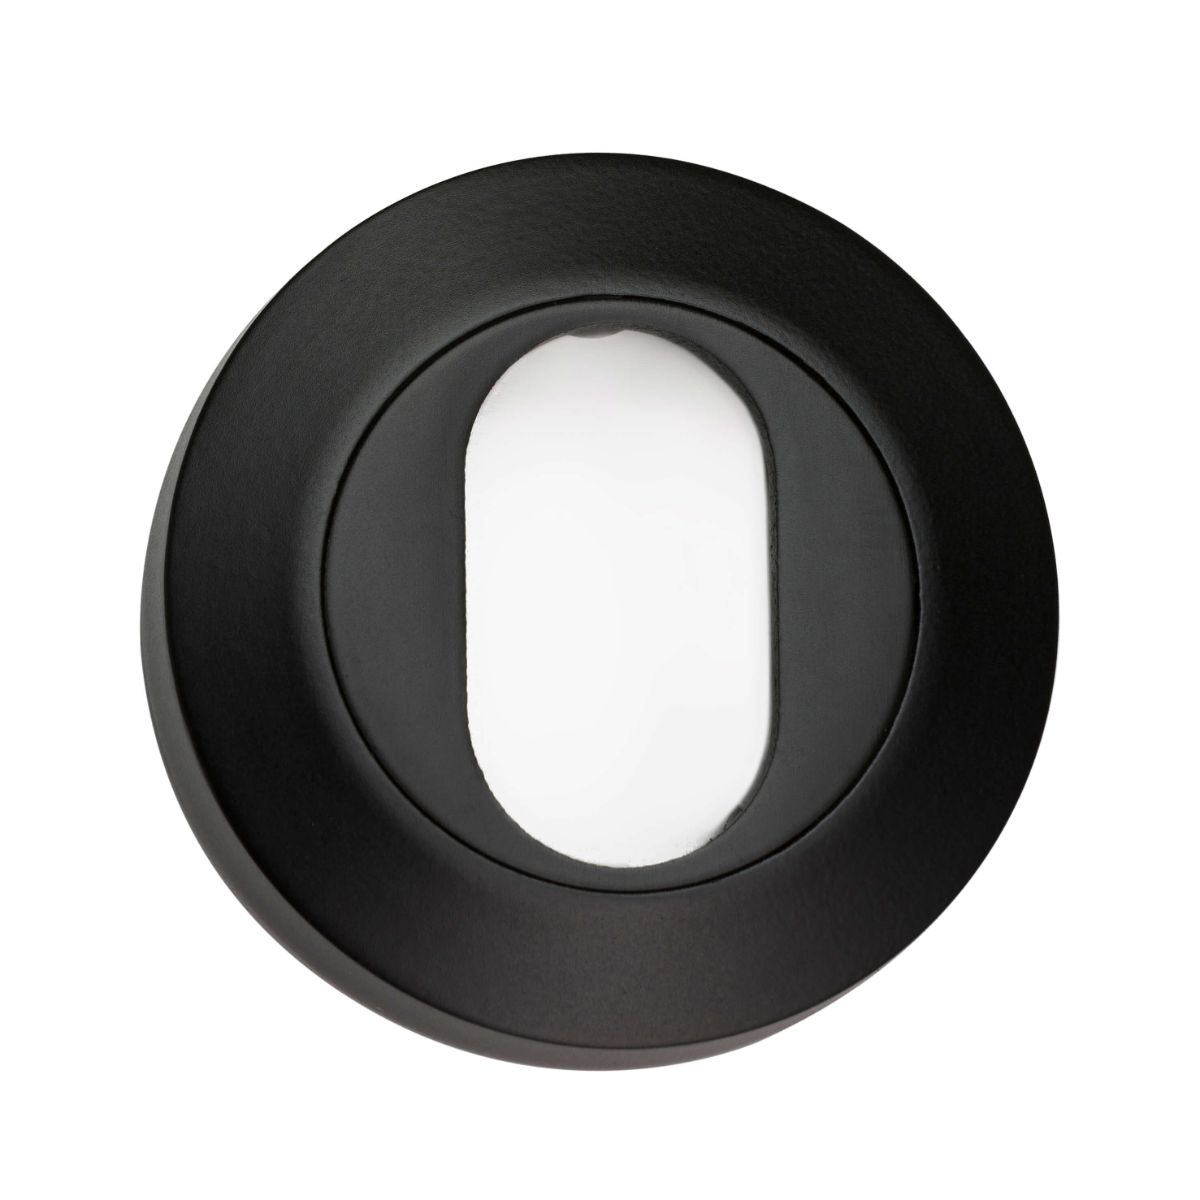 53mm Round Oval Escutcheon - Black